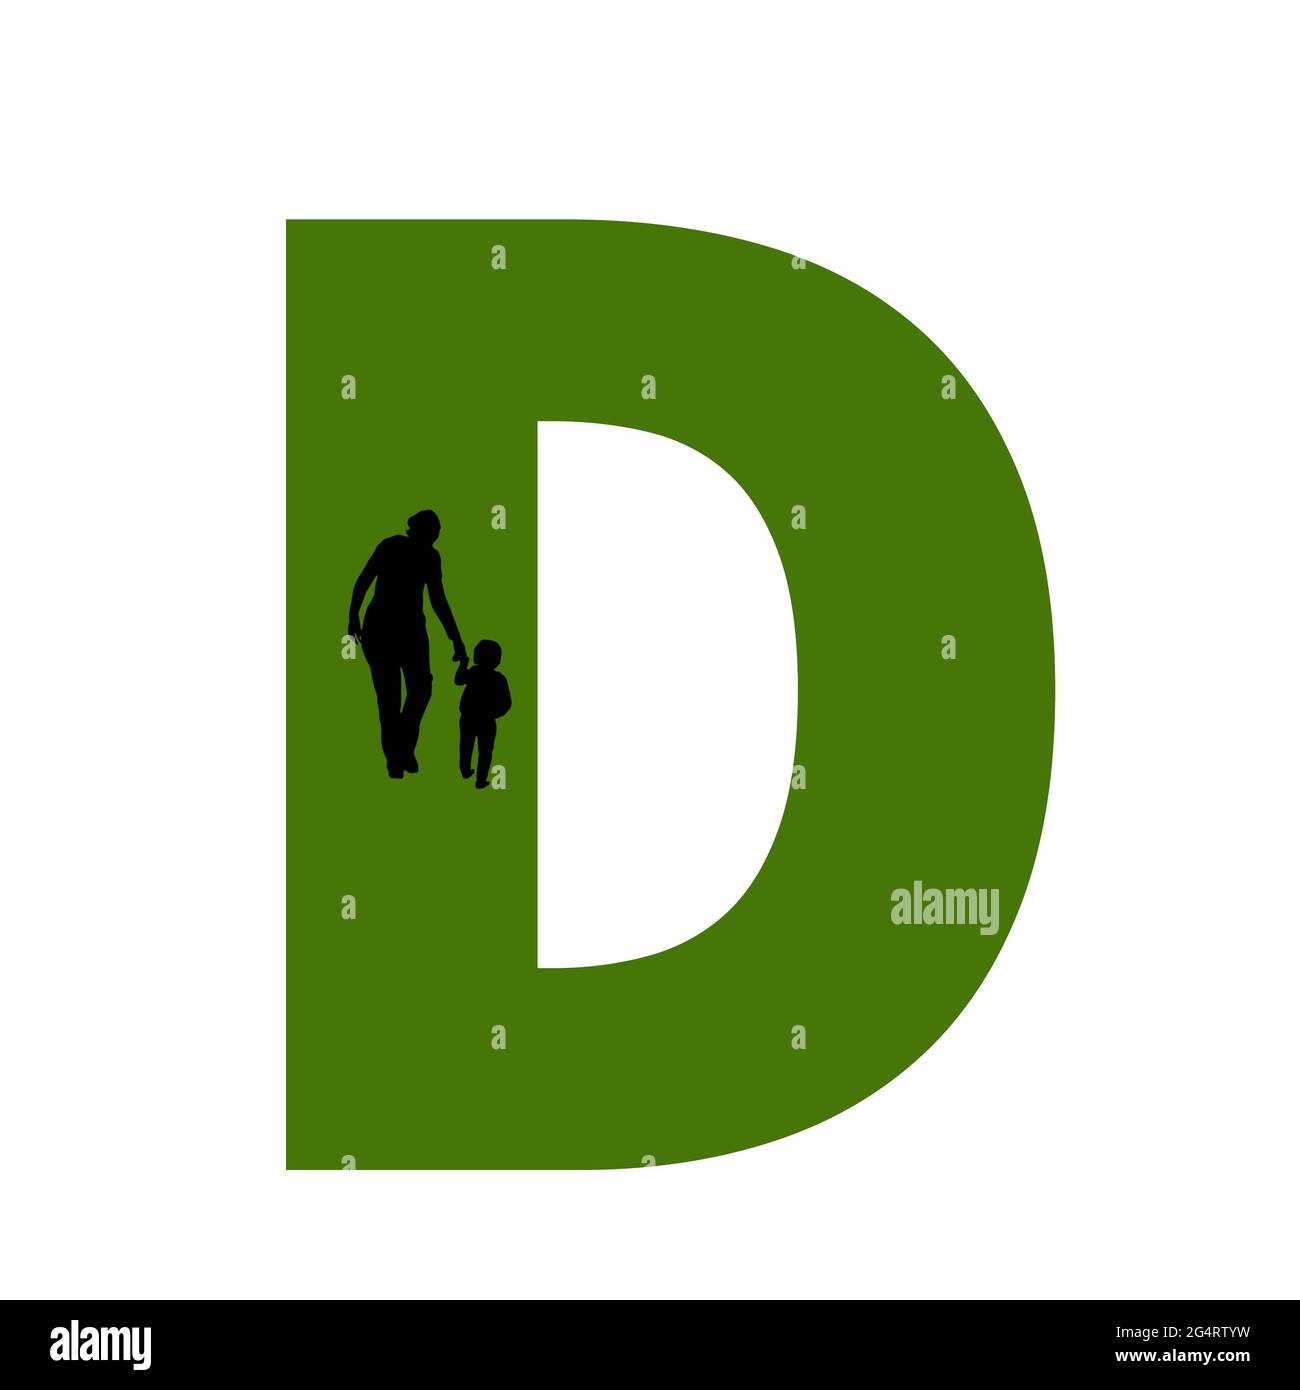 Lettera D dell'alfabeto fatta con la sagoma di una madre e di un bambino che cammina, in verde e nero Foto Stock